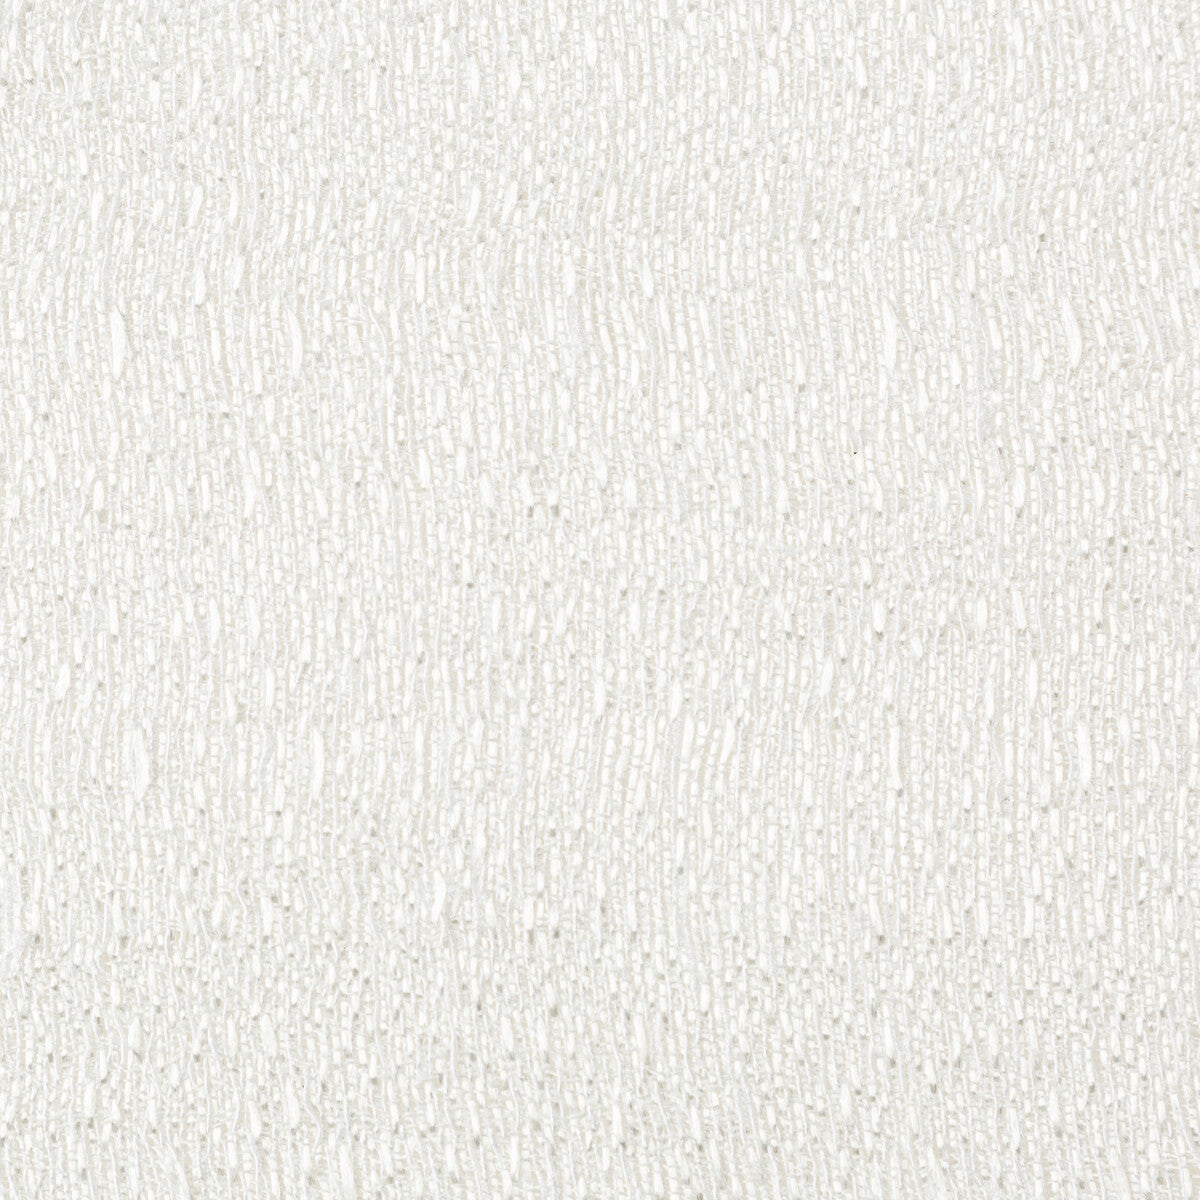 Kravet Basics fabric in 4764-101 color - pattern 4764.101.0 - by Kravet Basics